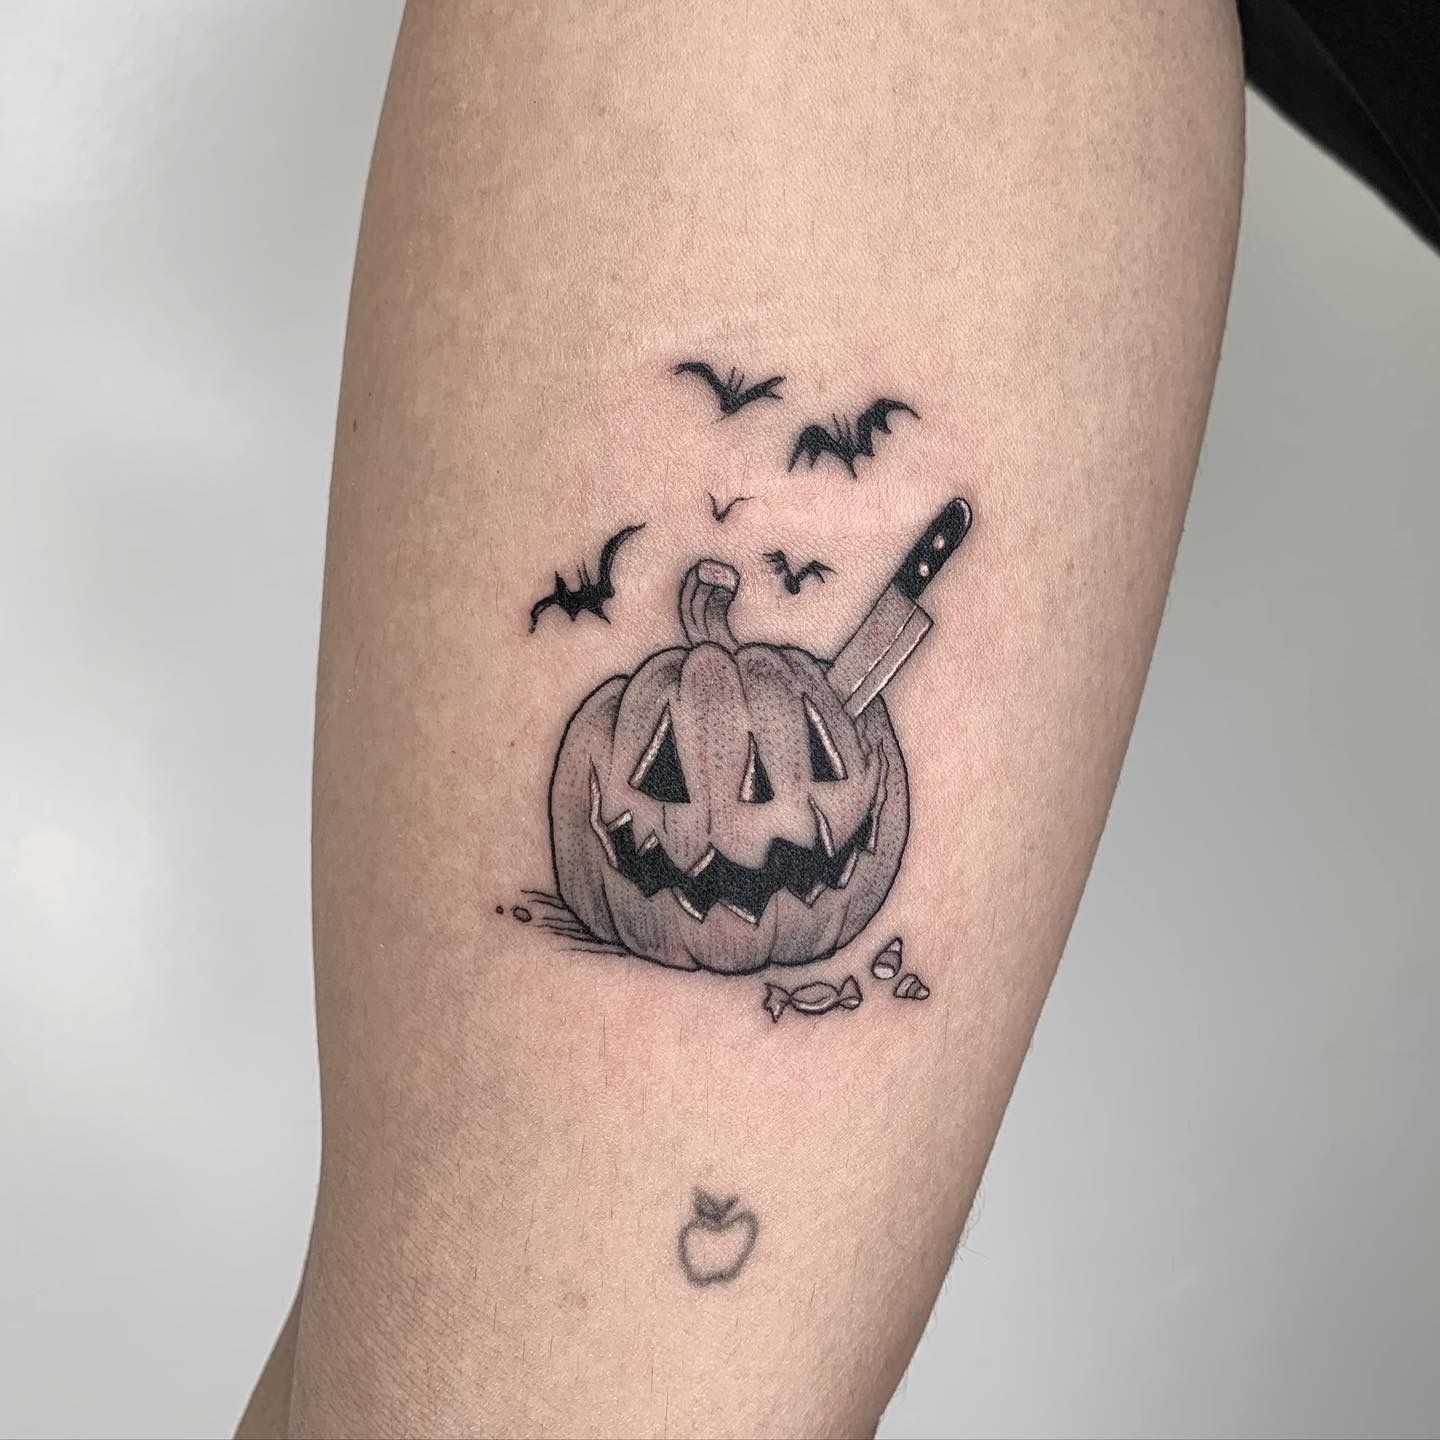 Halloween tattoo ideas just in time for spooky season  Splash of Spooky